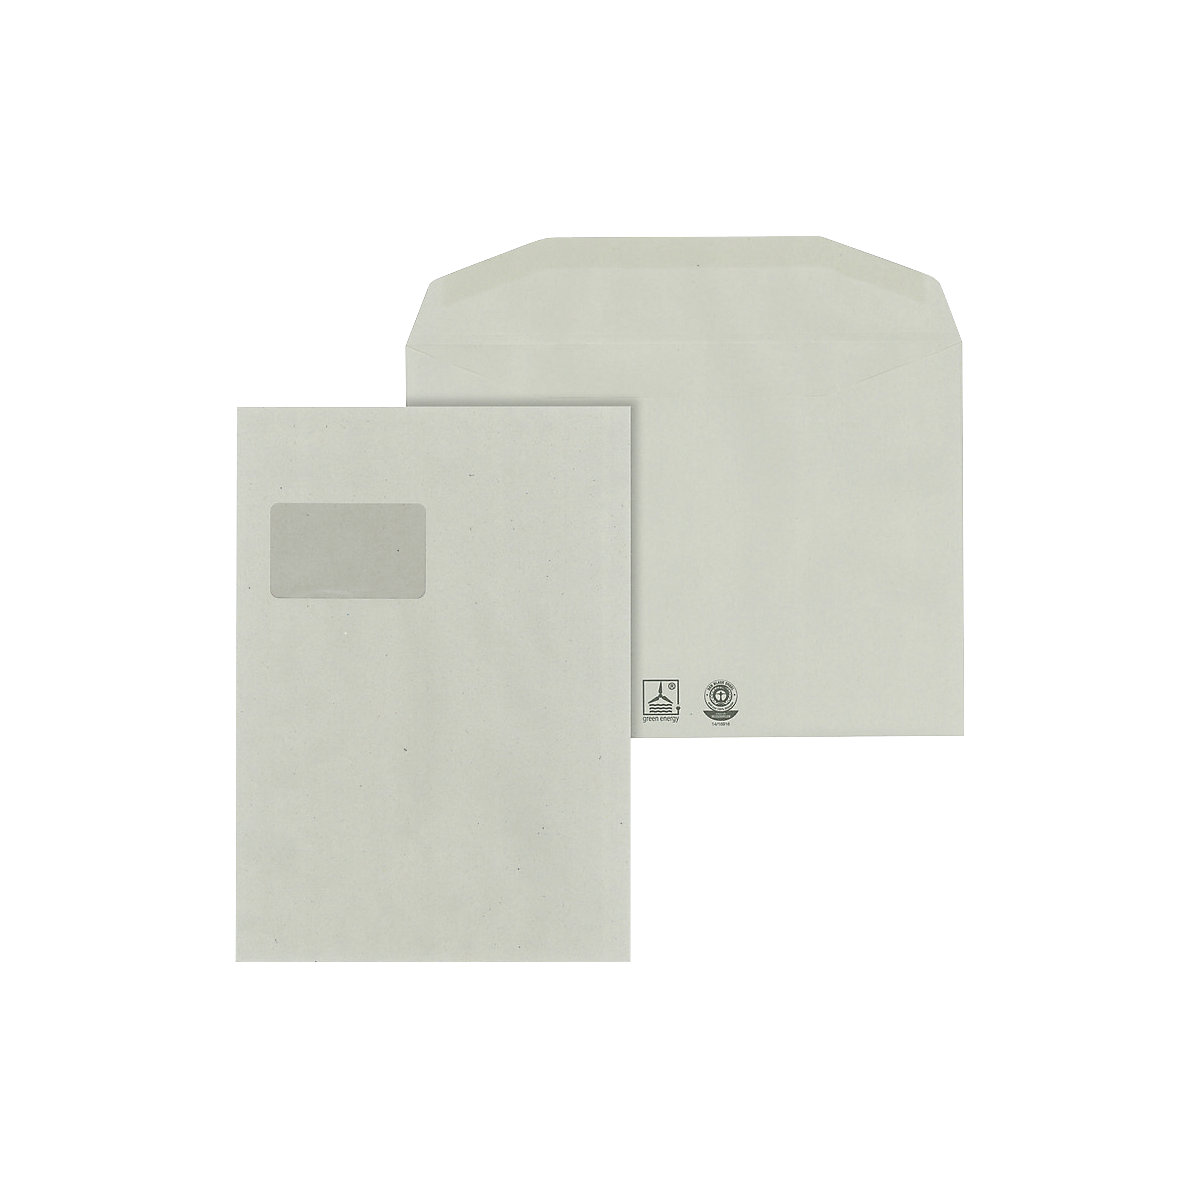 Buste – eurokraft basic, carta riciclata, con finestra, formato C4, conf. da 500 pz.-1